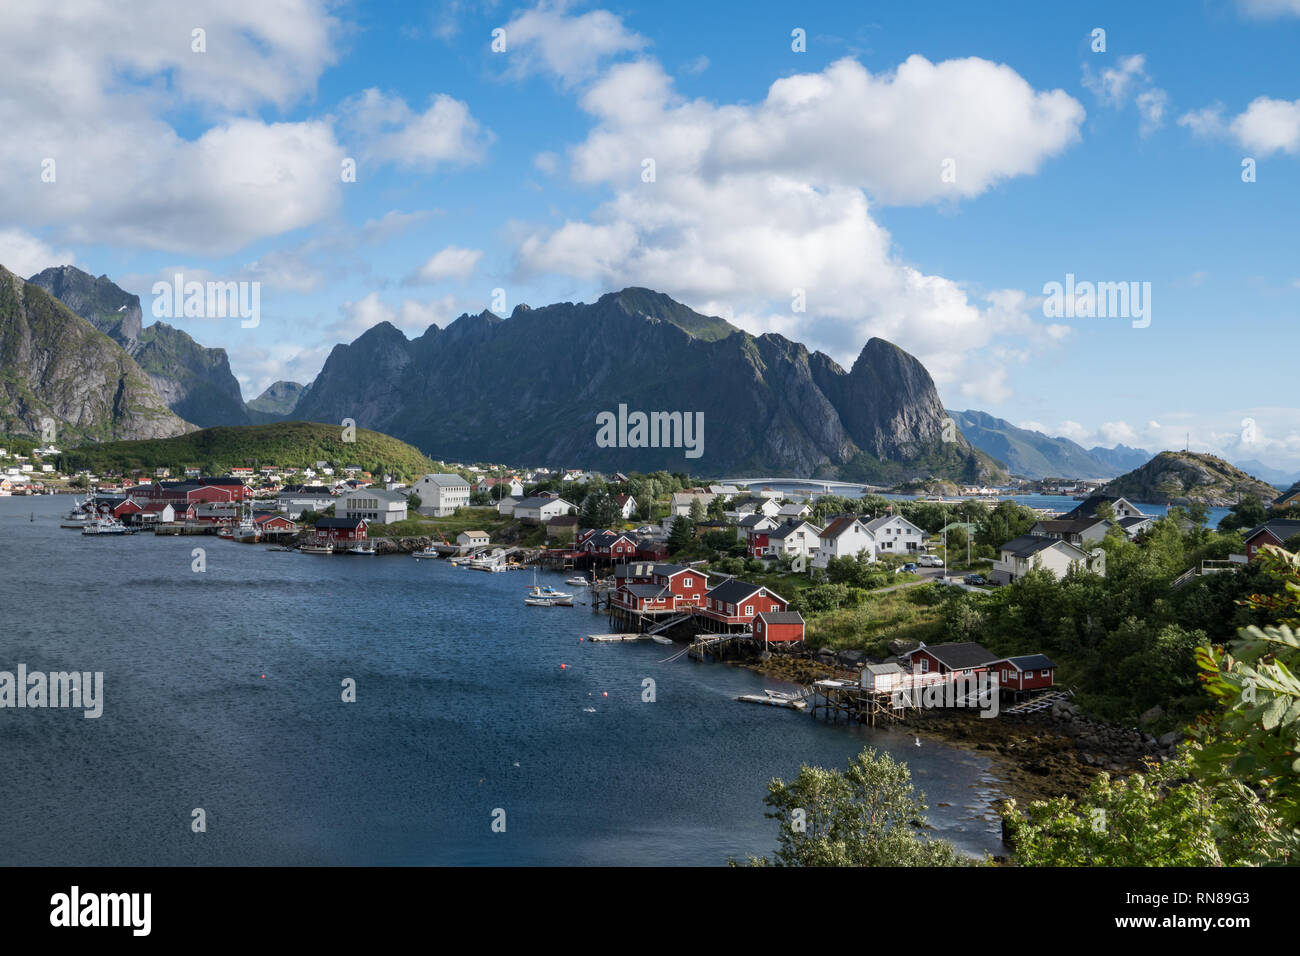 Vue spectaculaire des îles Lofoten en Norvège vue paysage de village de pêcheurs avec les montagnes, l'eau et de ciel bleu. Banque D'Images